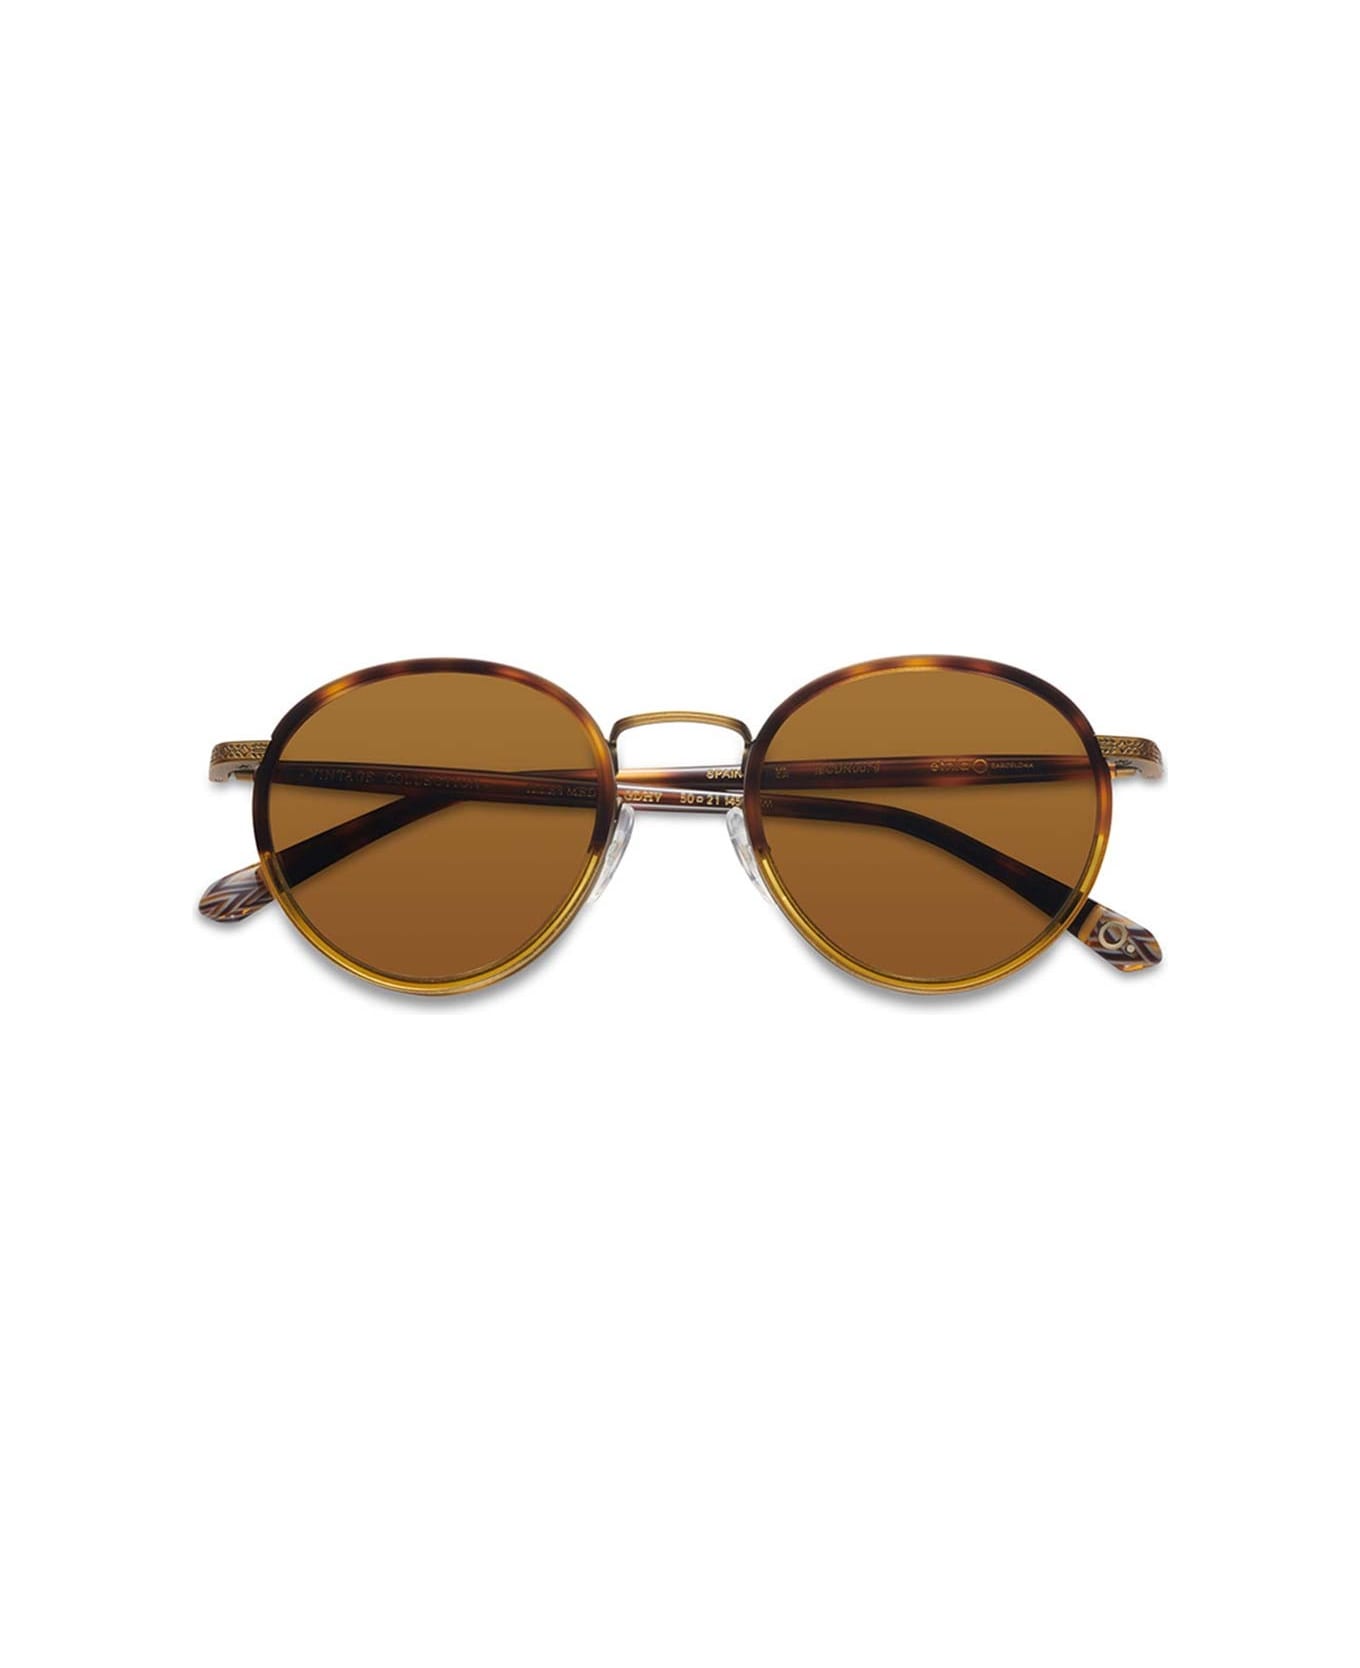 Etnia Barcelona Sunglasses - Marrone/Marrone